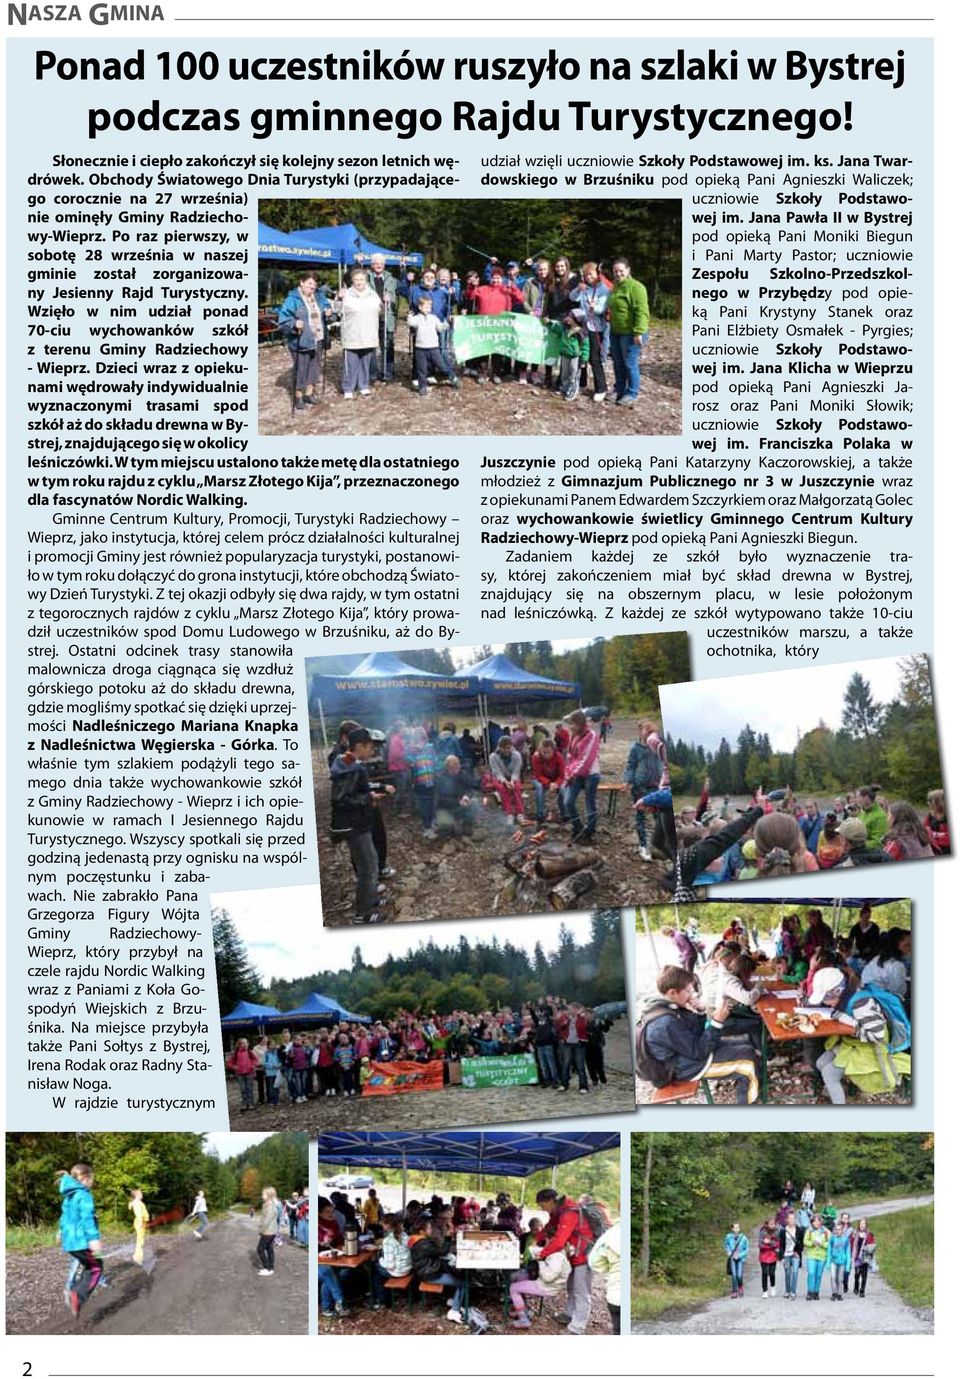 Po raz pierwszy, w sobotę 28 września w naszej gminie został zorganizowany Jesienny Rajd Turystyczny. Wzięło w nim udział ponad 70-ciu wychowanków szkół z terenu Gminy Radziechowy - Wieprz.